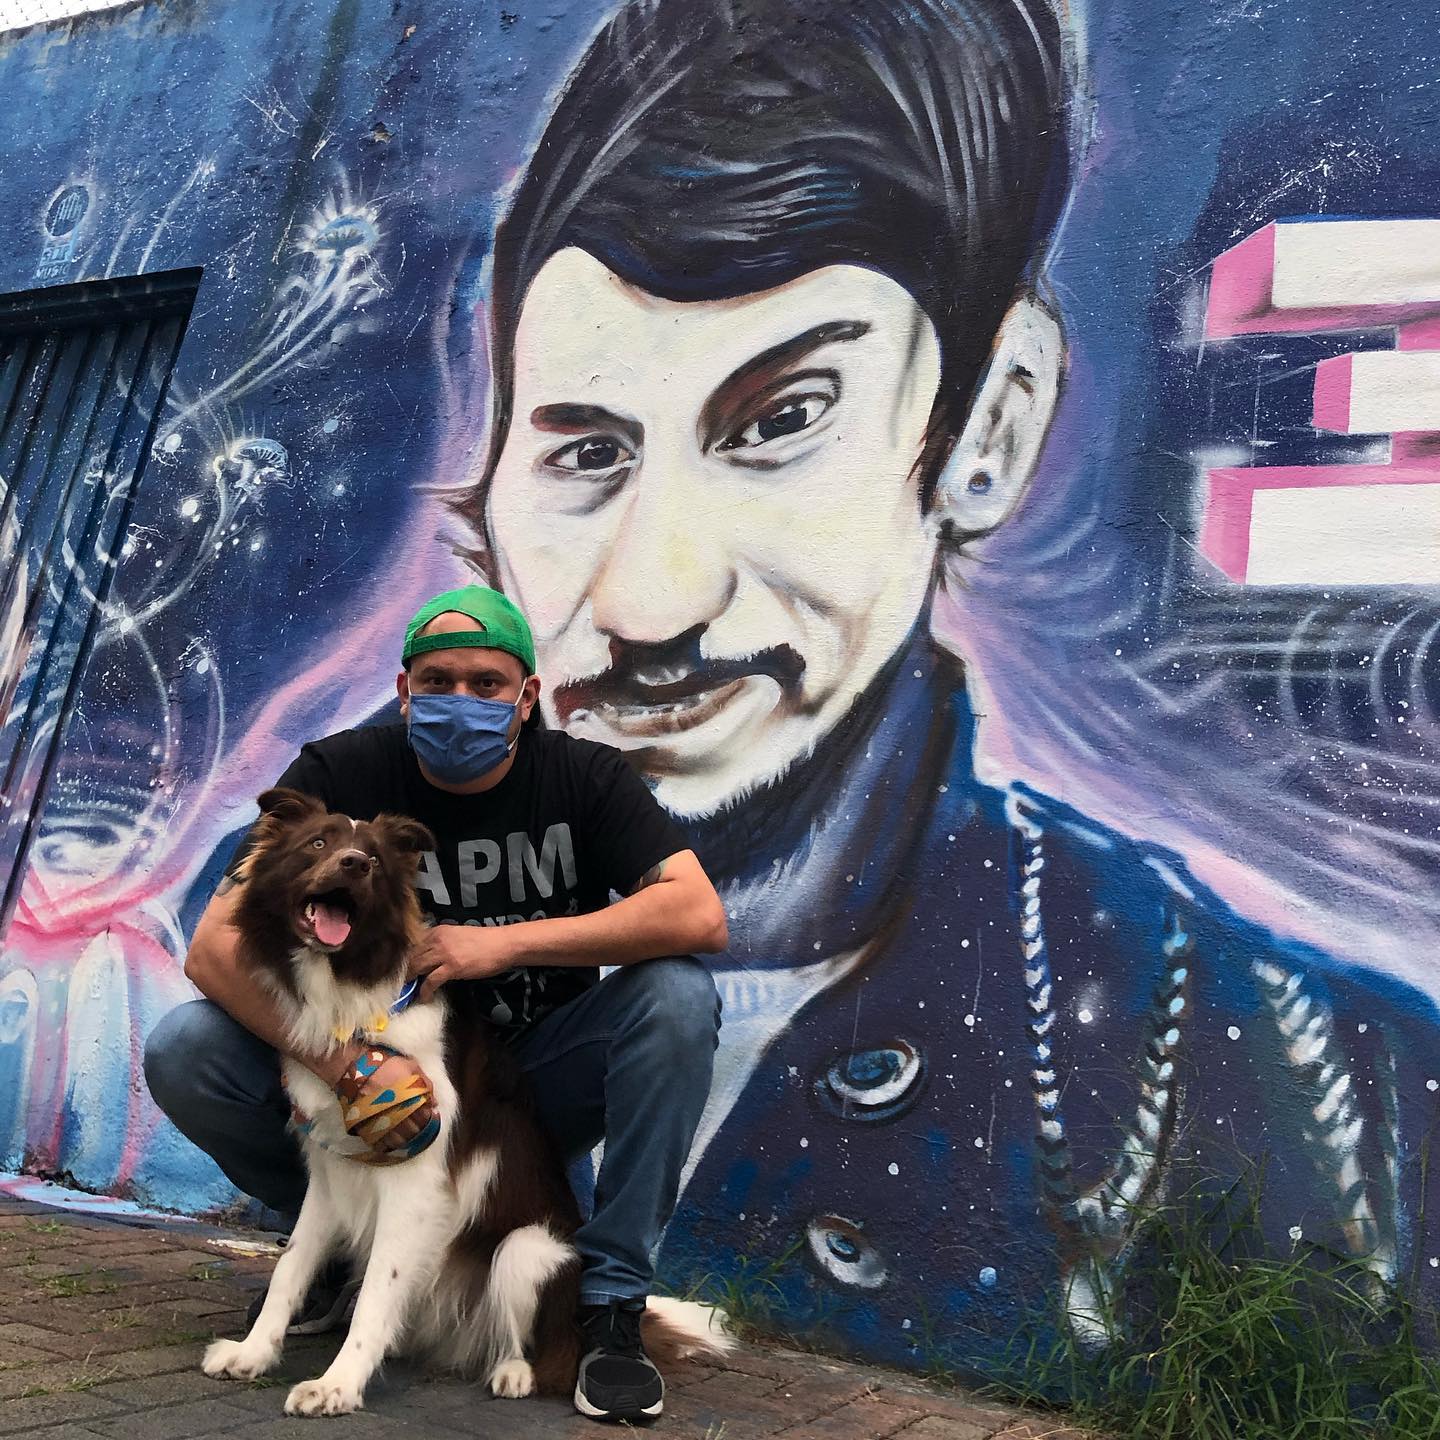 Martin Ruiz de D-ambulantes junto a BoB en el mural de Diego Trujillo (baterista de Tour de Force y Lucy) en Cali, Colombia